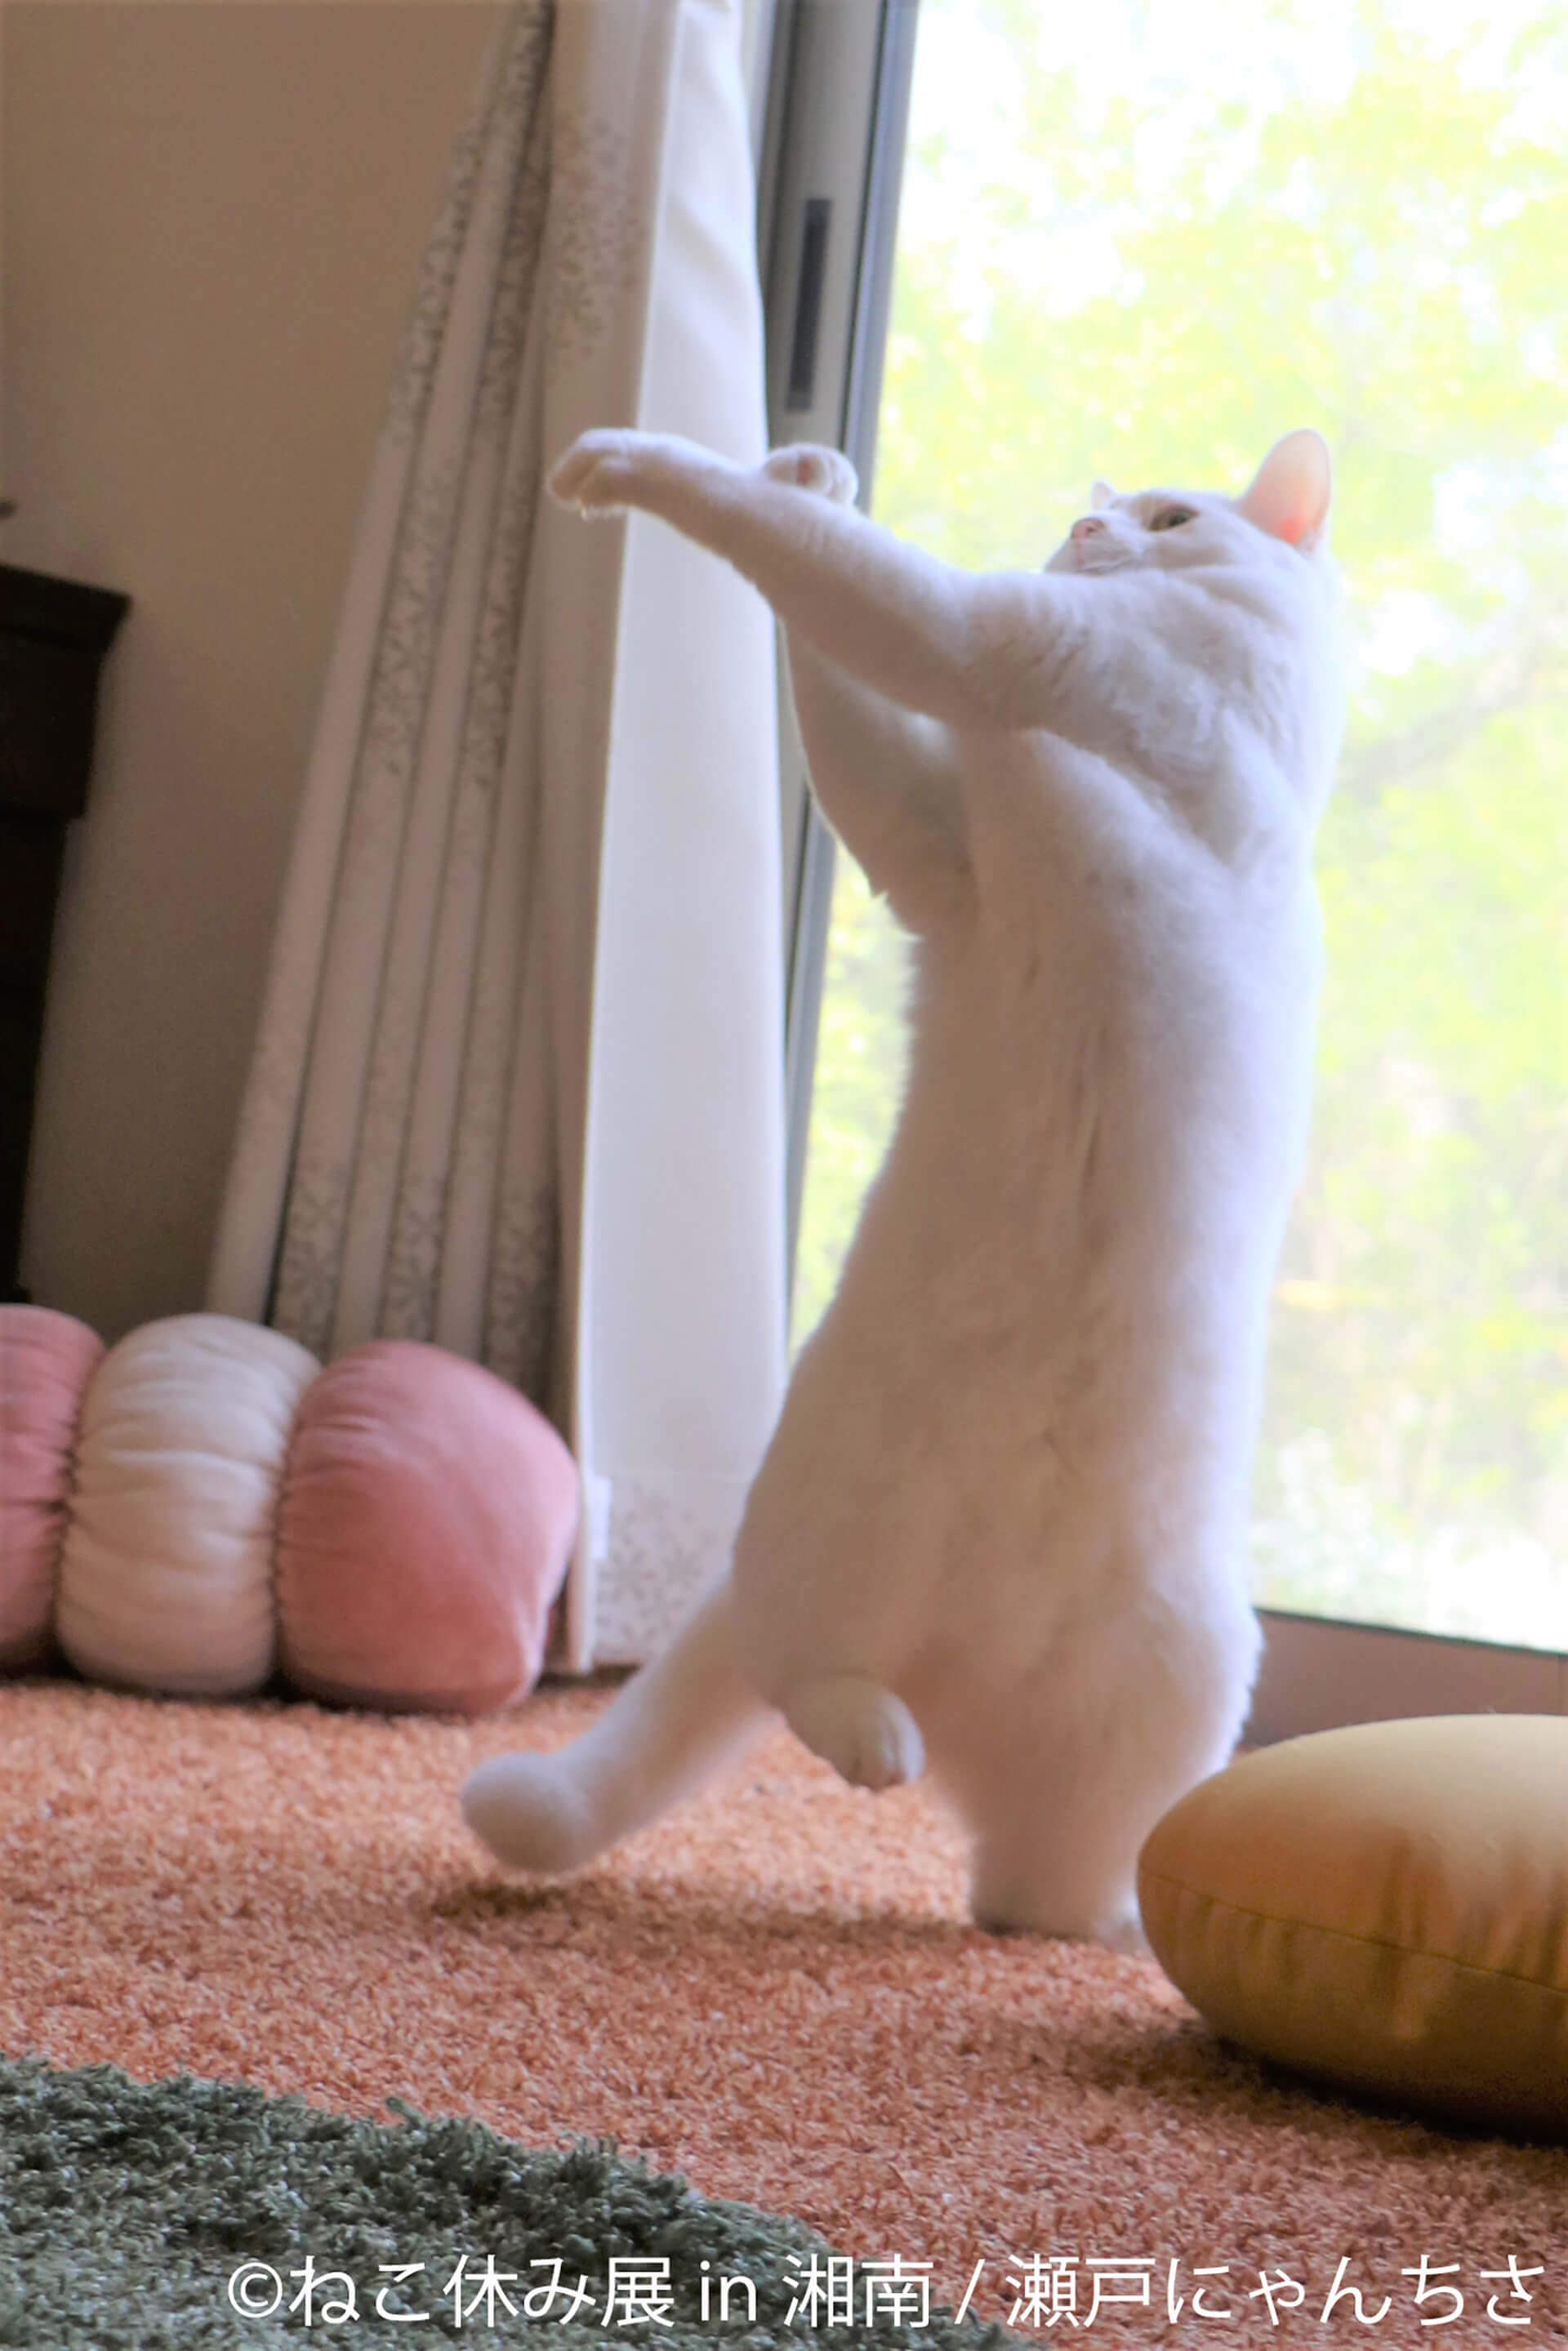 この写真はねこ休み展 in 湘南の展示作品で、日本の足で立ち上がる猫です